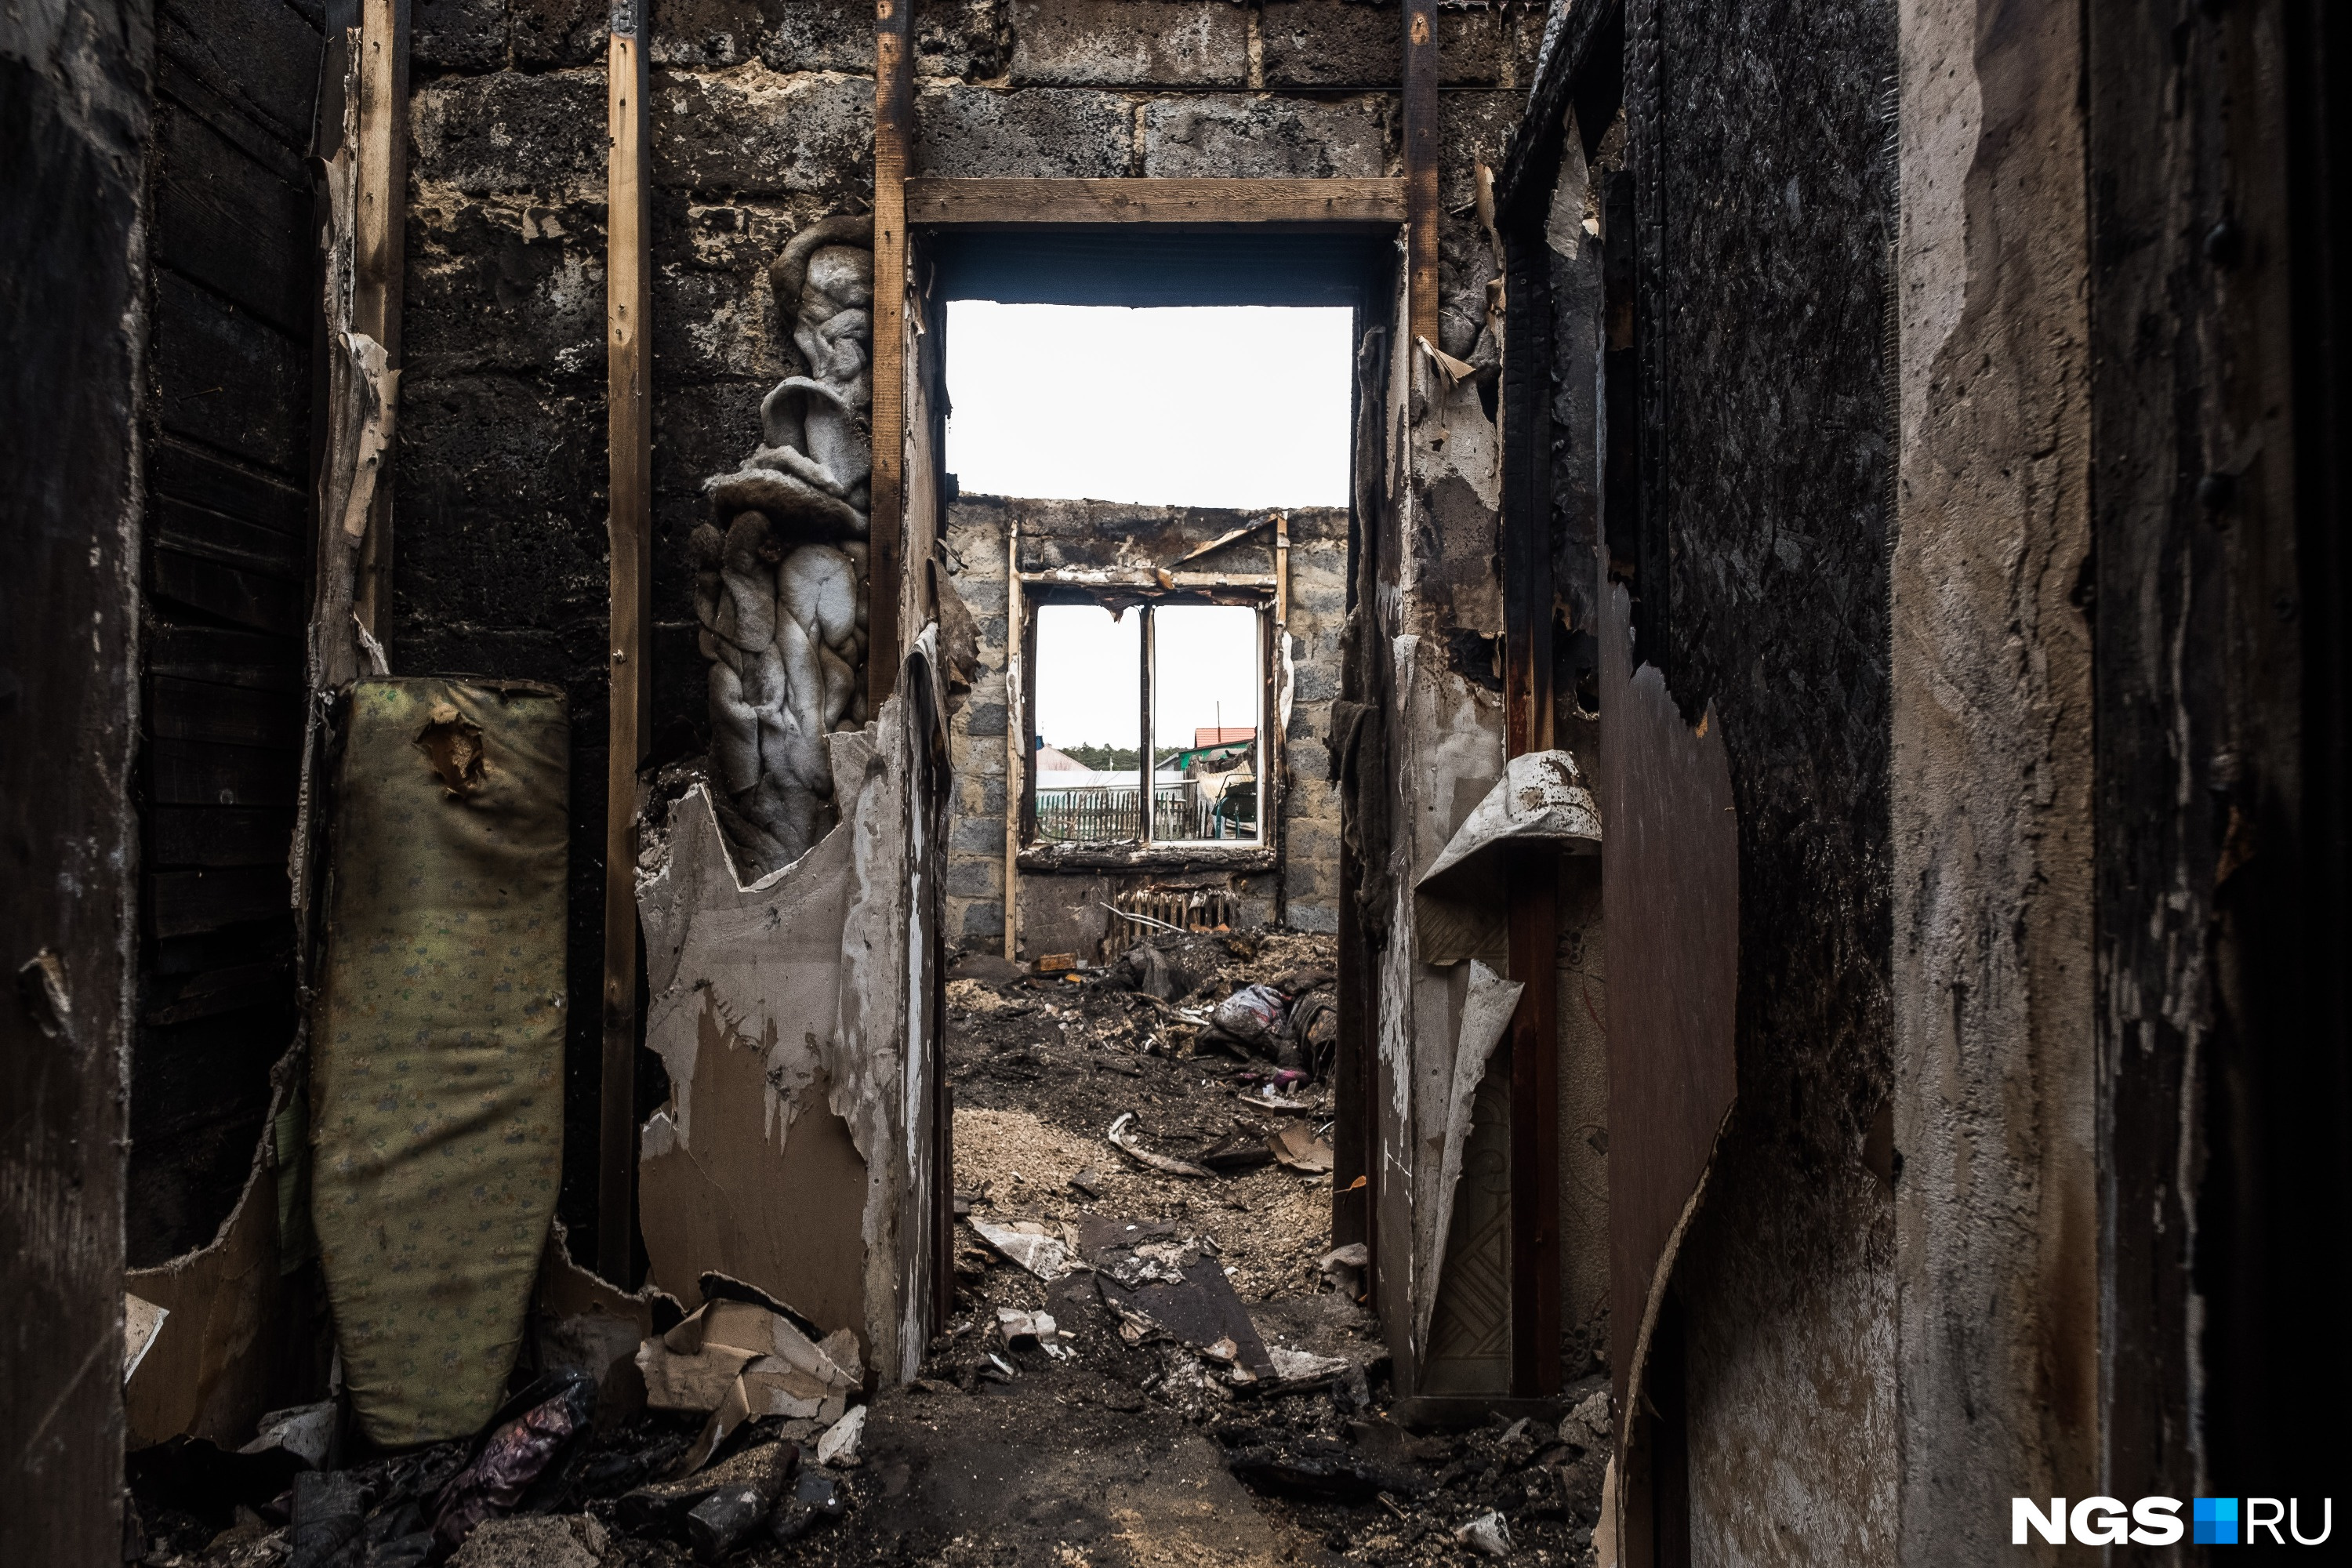 Марьясова хотела отремонтировать дом перед продажей, но в огне ничего не уцелело